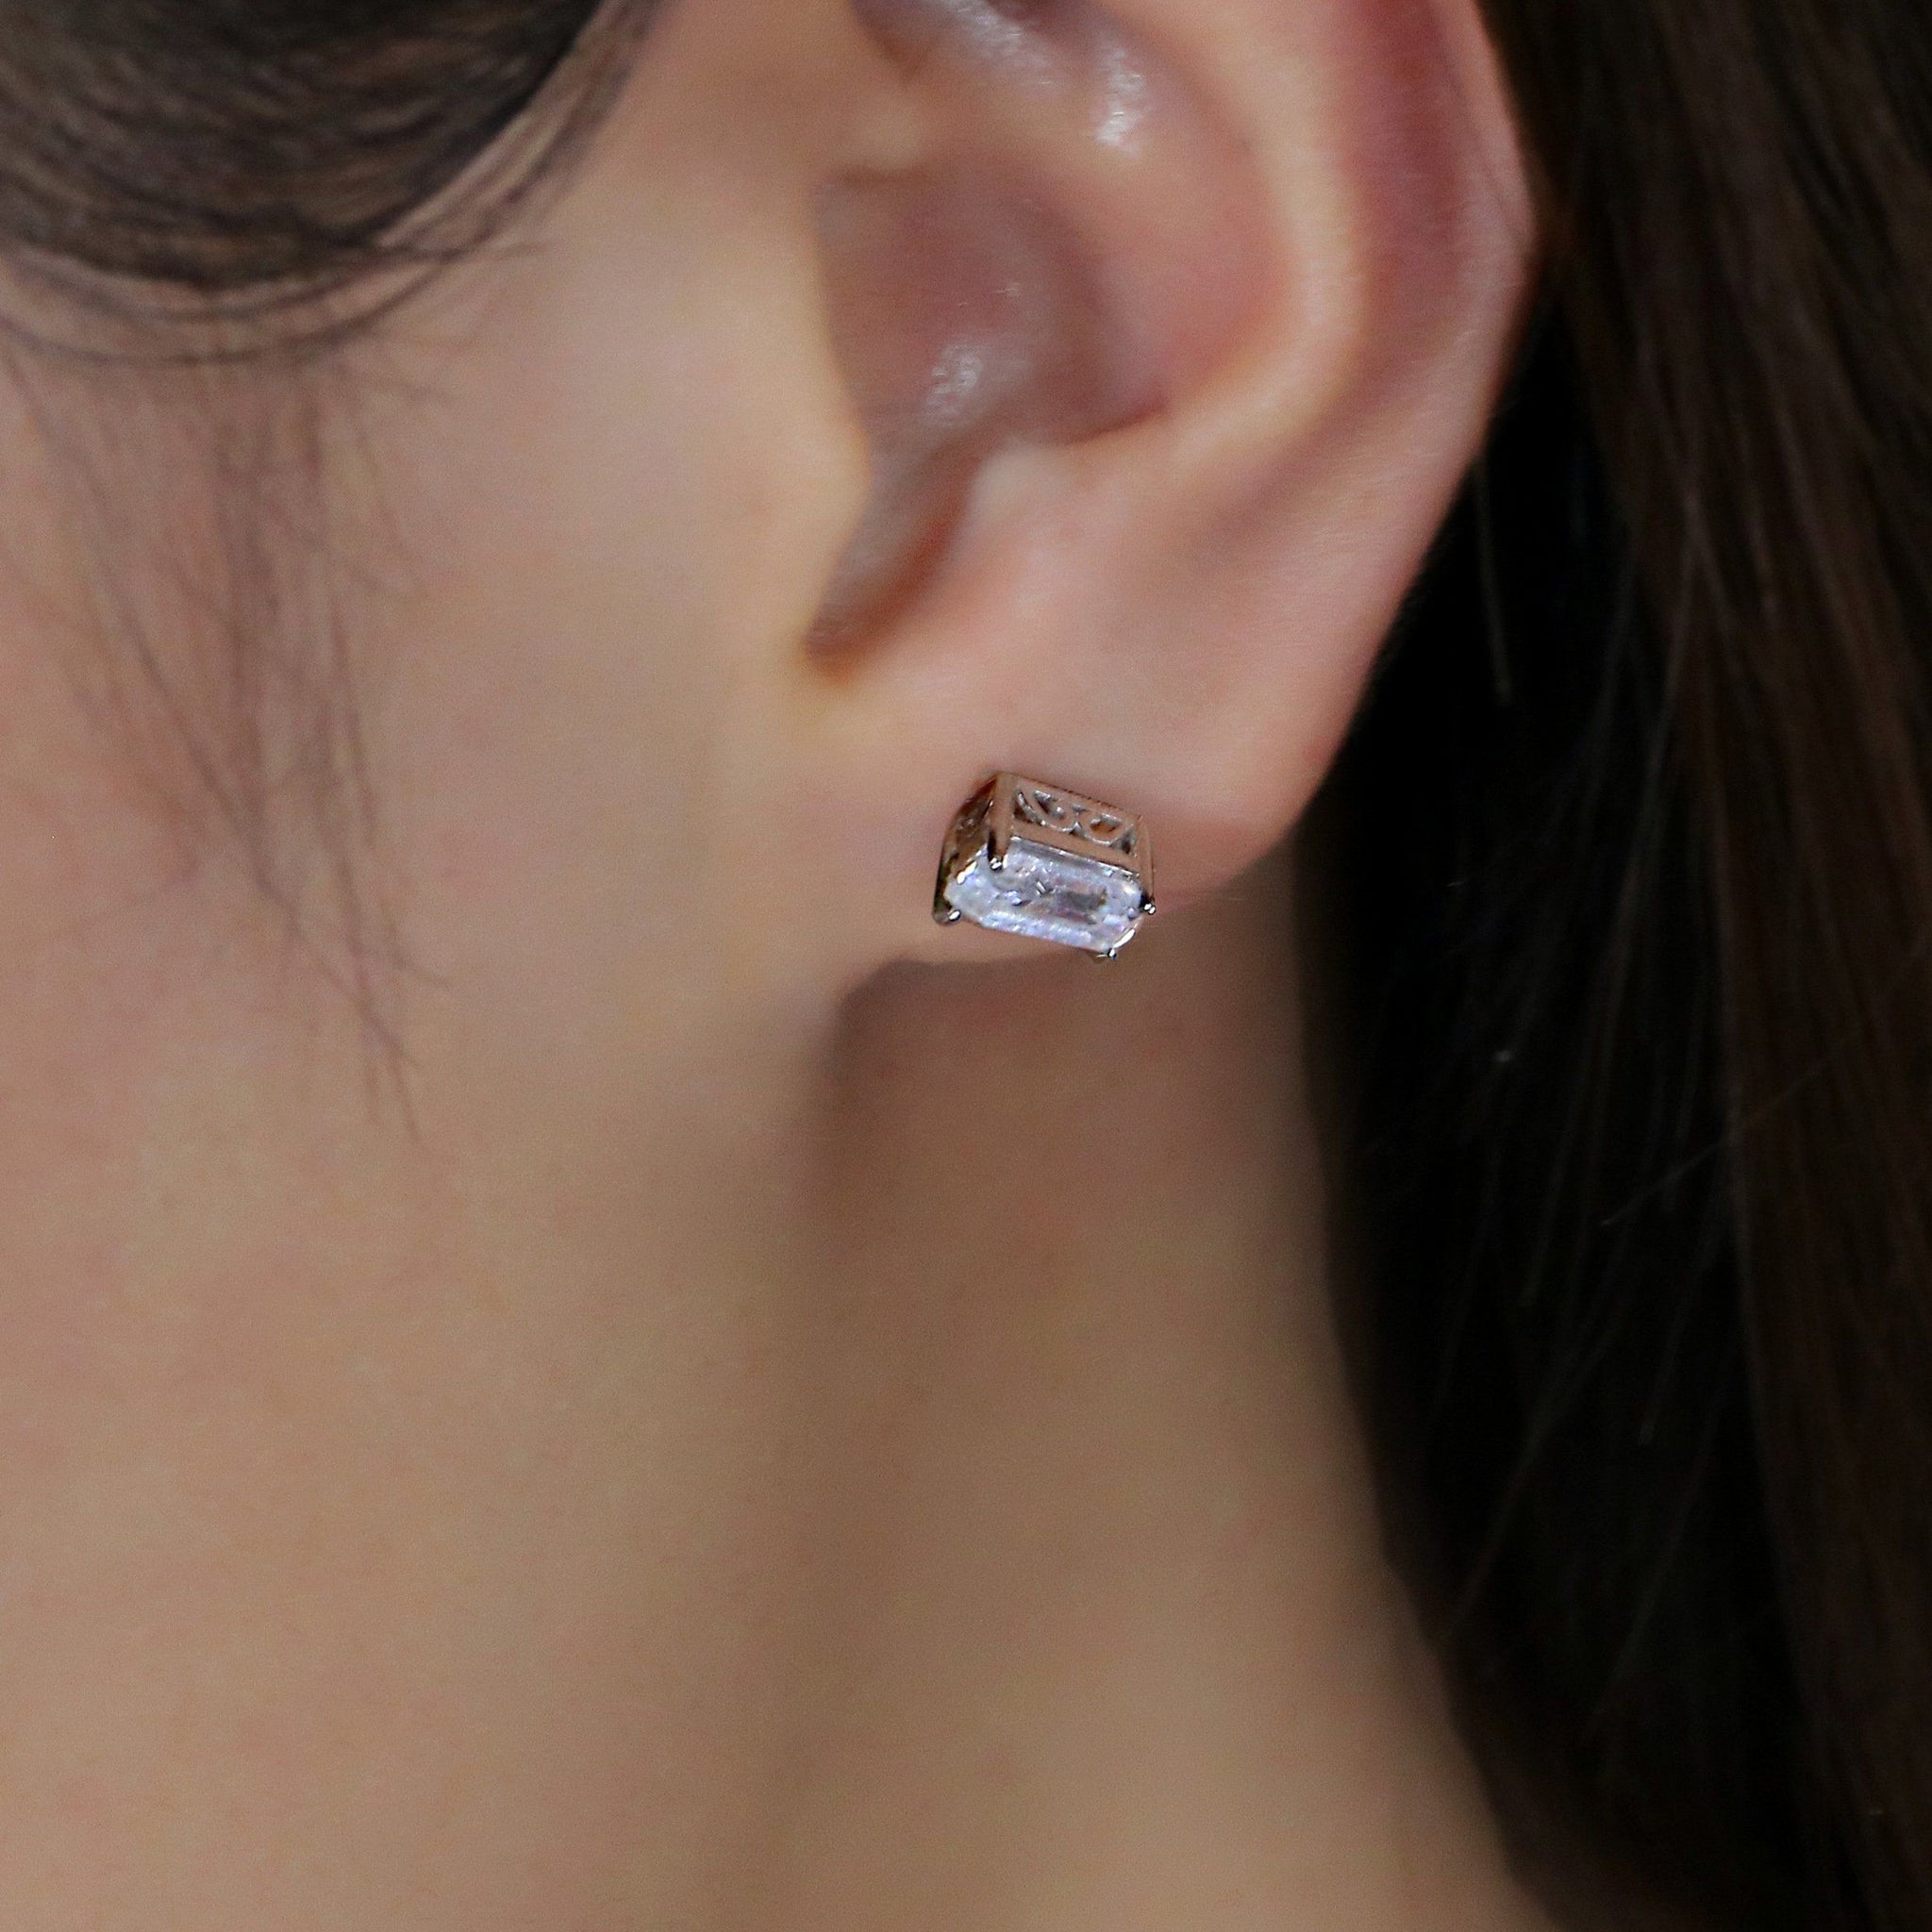 doveggs moissanite earring studs 14k white gold 1.2ct 4x6mm emerald moissanite earring studs push back for women - DovEggs-Seattle